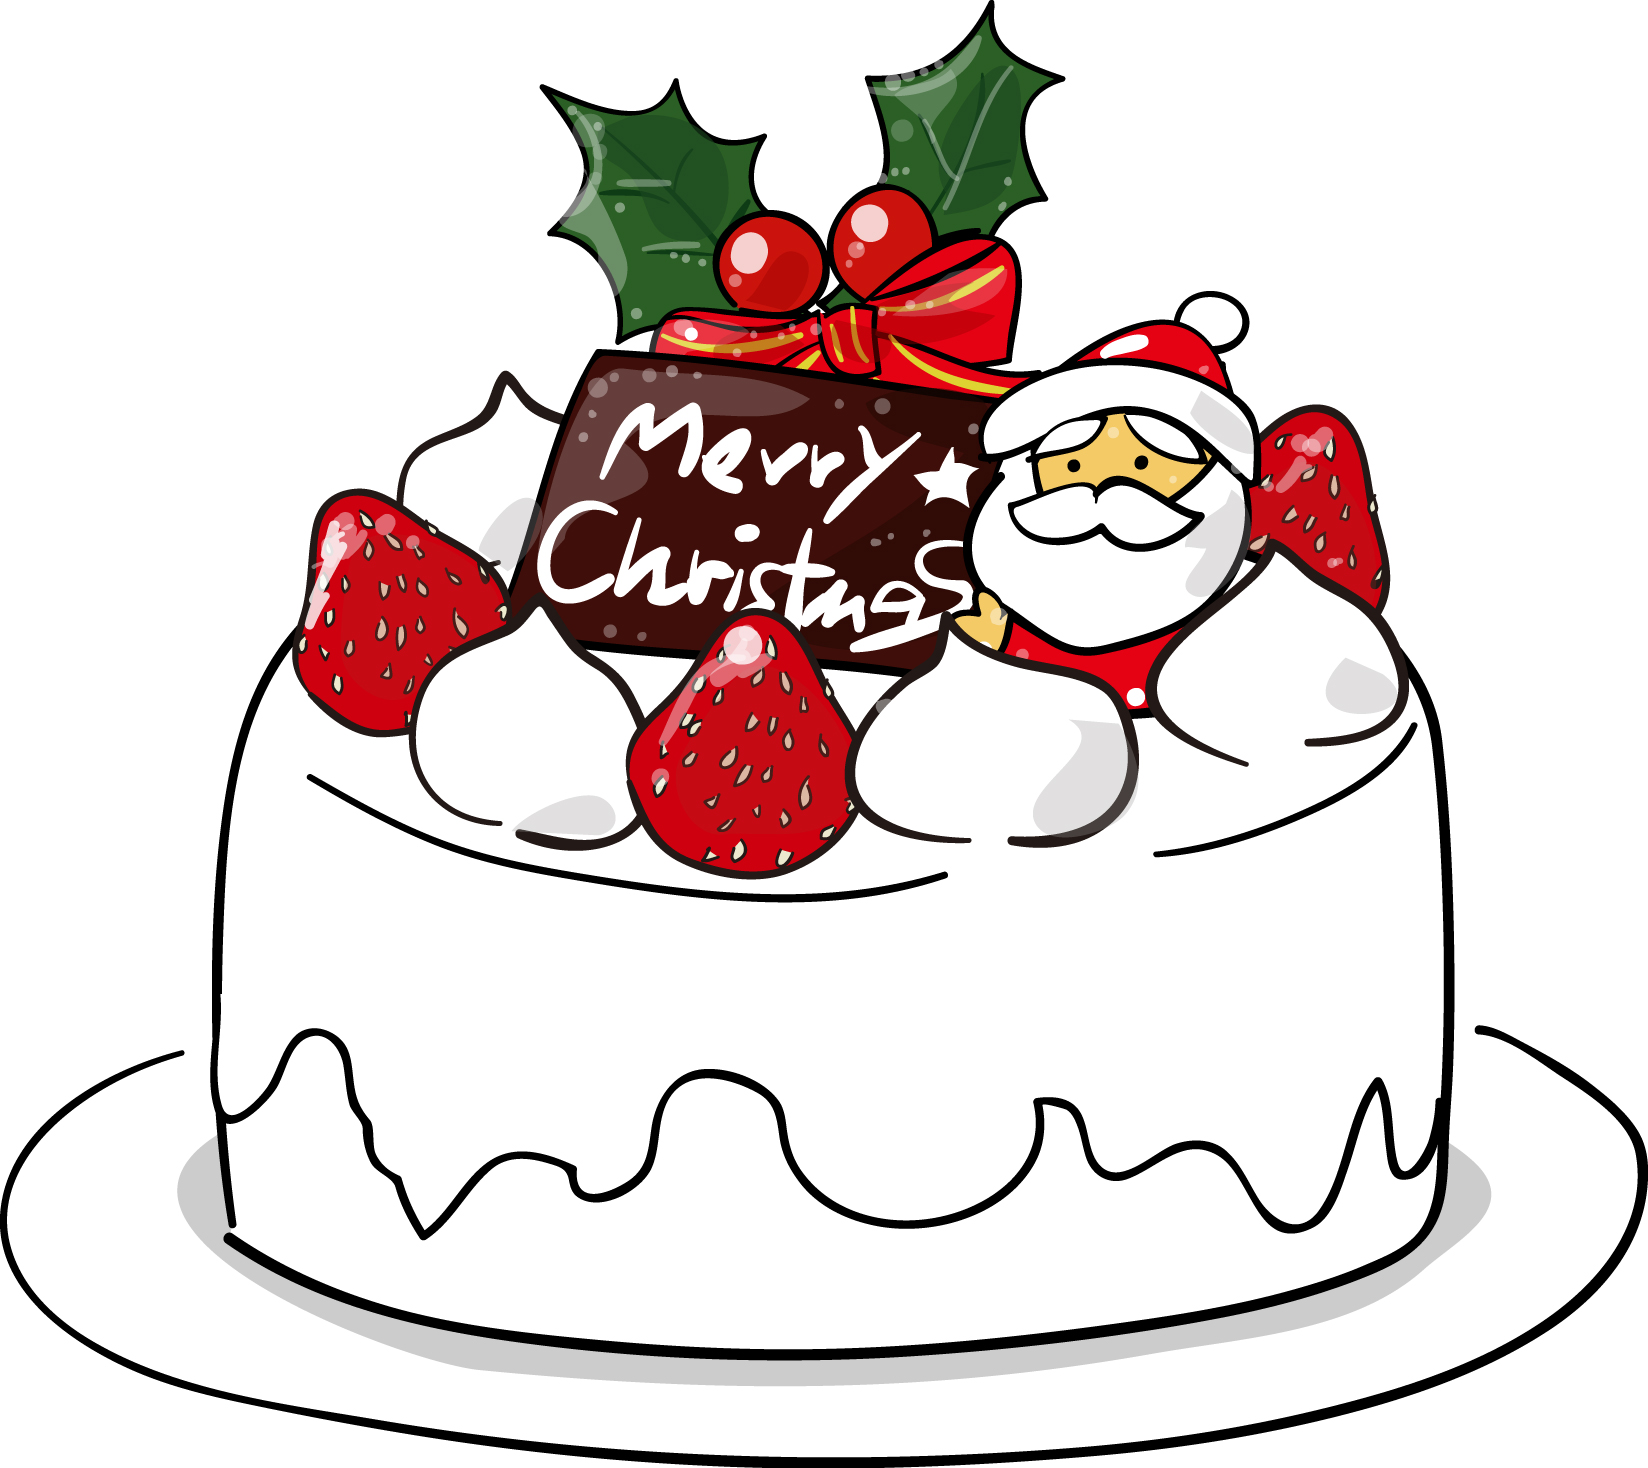 冬 食べ物の印刷用イラスト素材 クリスマスケーキ ダウンロード